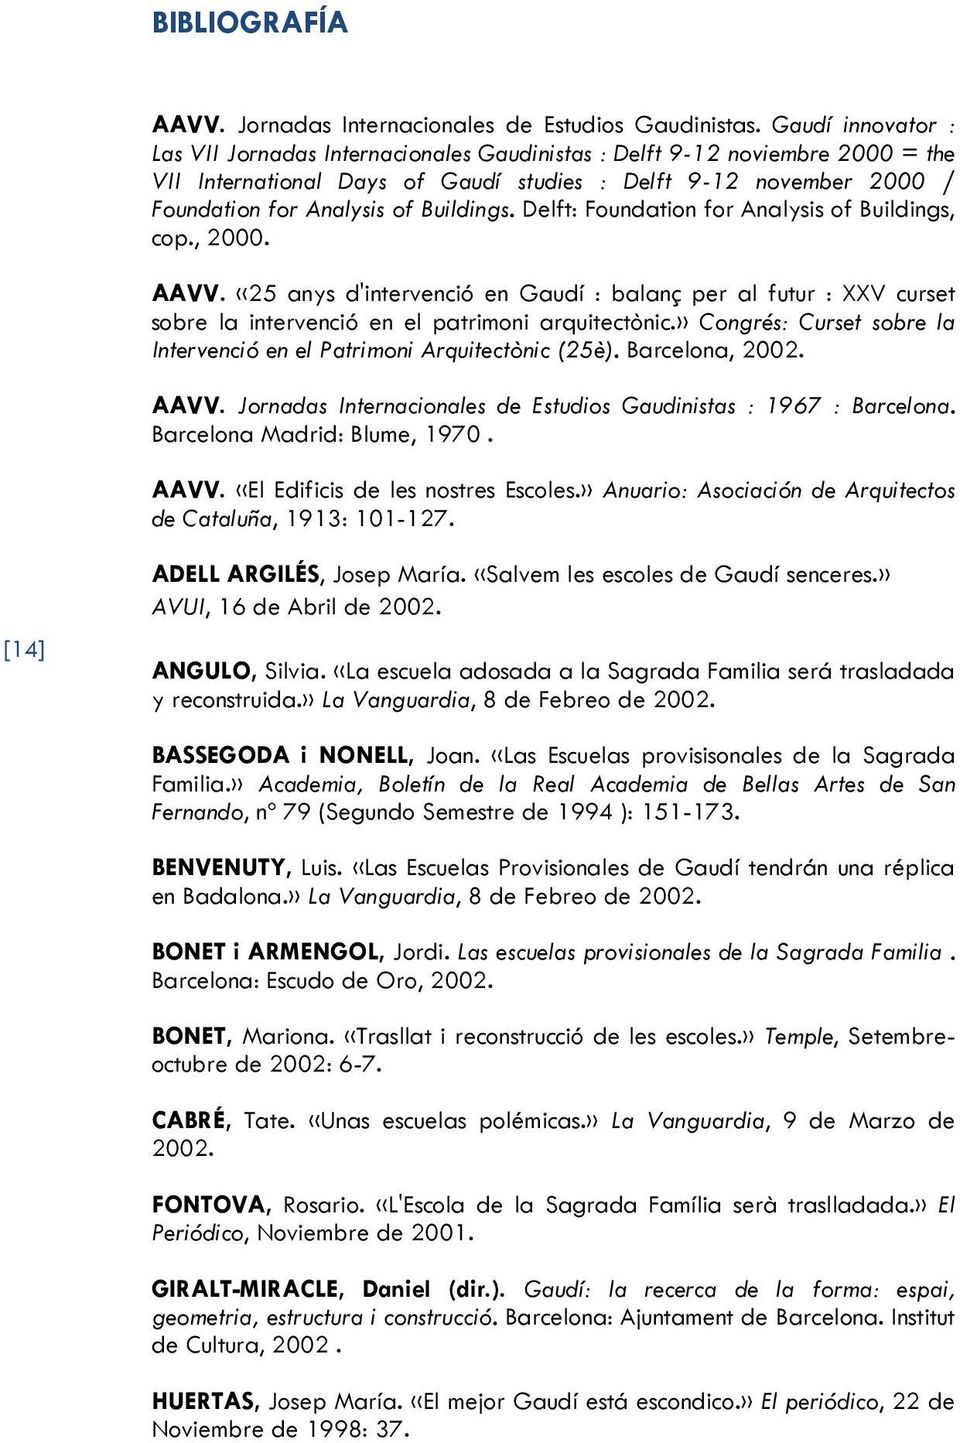 Buildings. Delft: Foundation for Analysis of Buildings, cop., 2000. AAVV. «25 anys d'intervenció en Gaudí : balanç per al futur : XXV curset sobre la intervenció en el patrimoni arquitectònic.